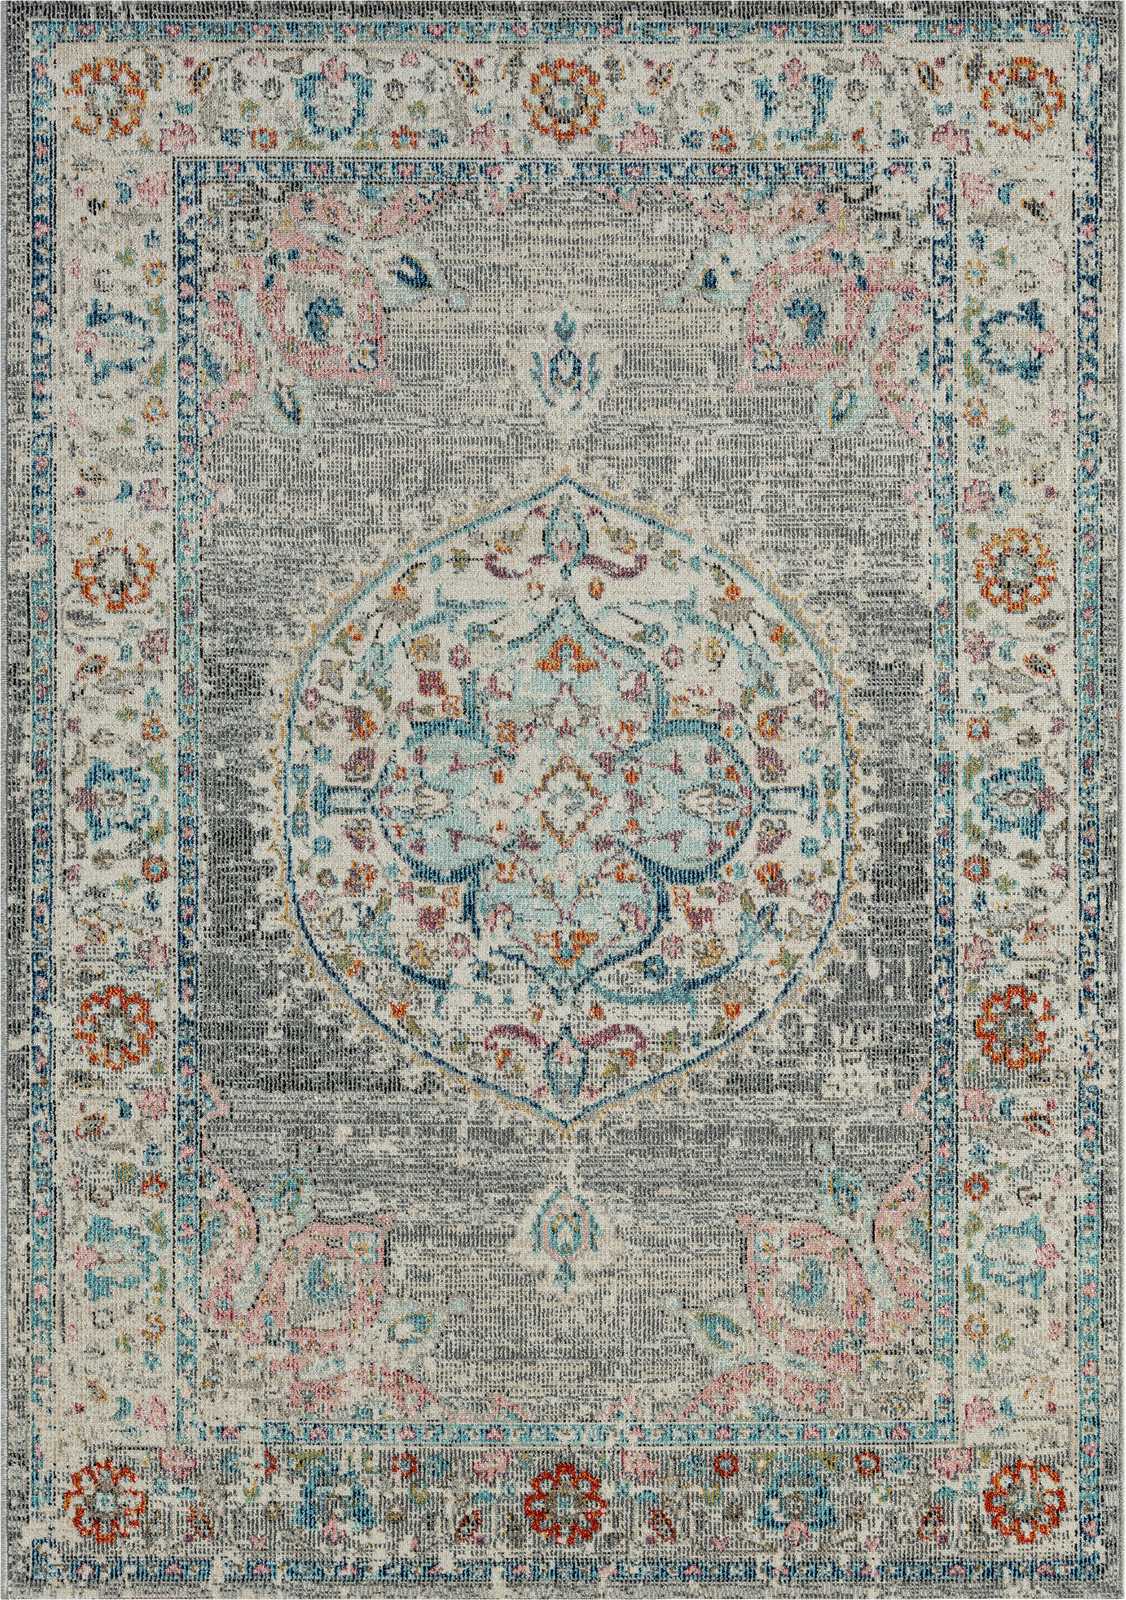             Grauer Outdoor Teppich aus Flachgewebe – 200 x 140 cm
        